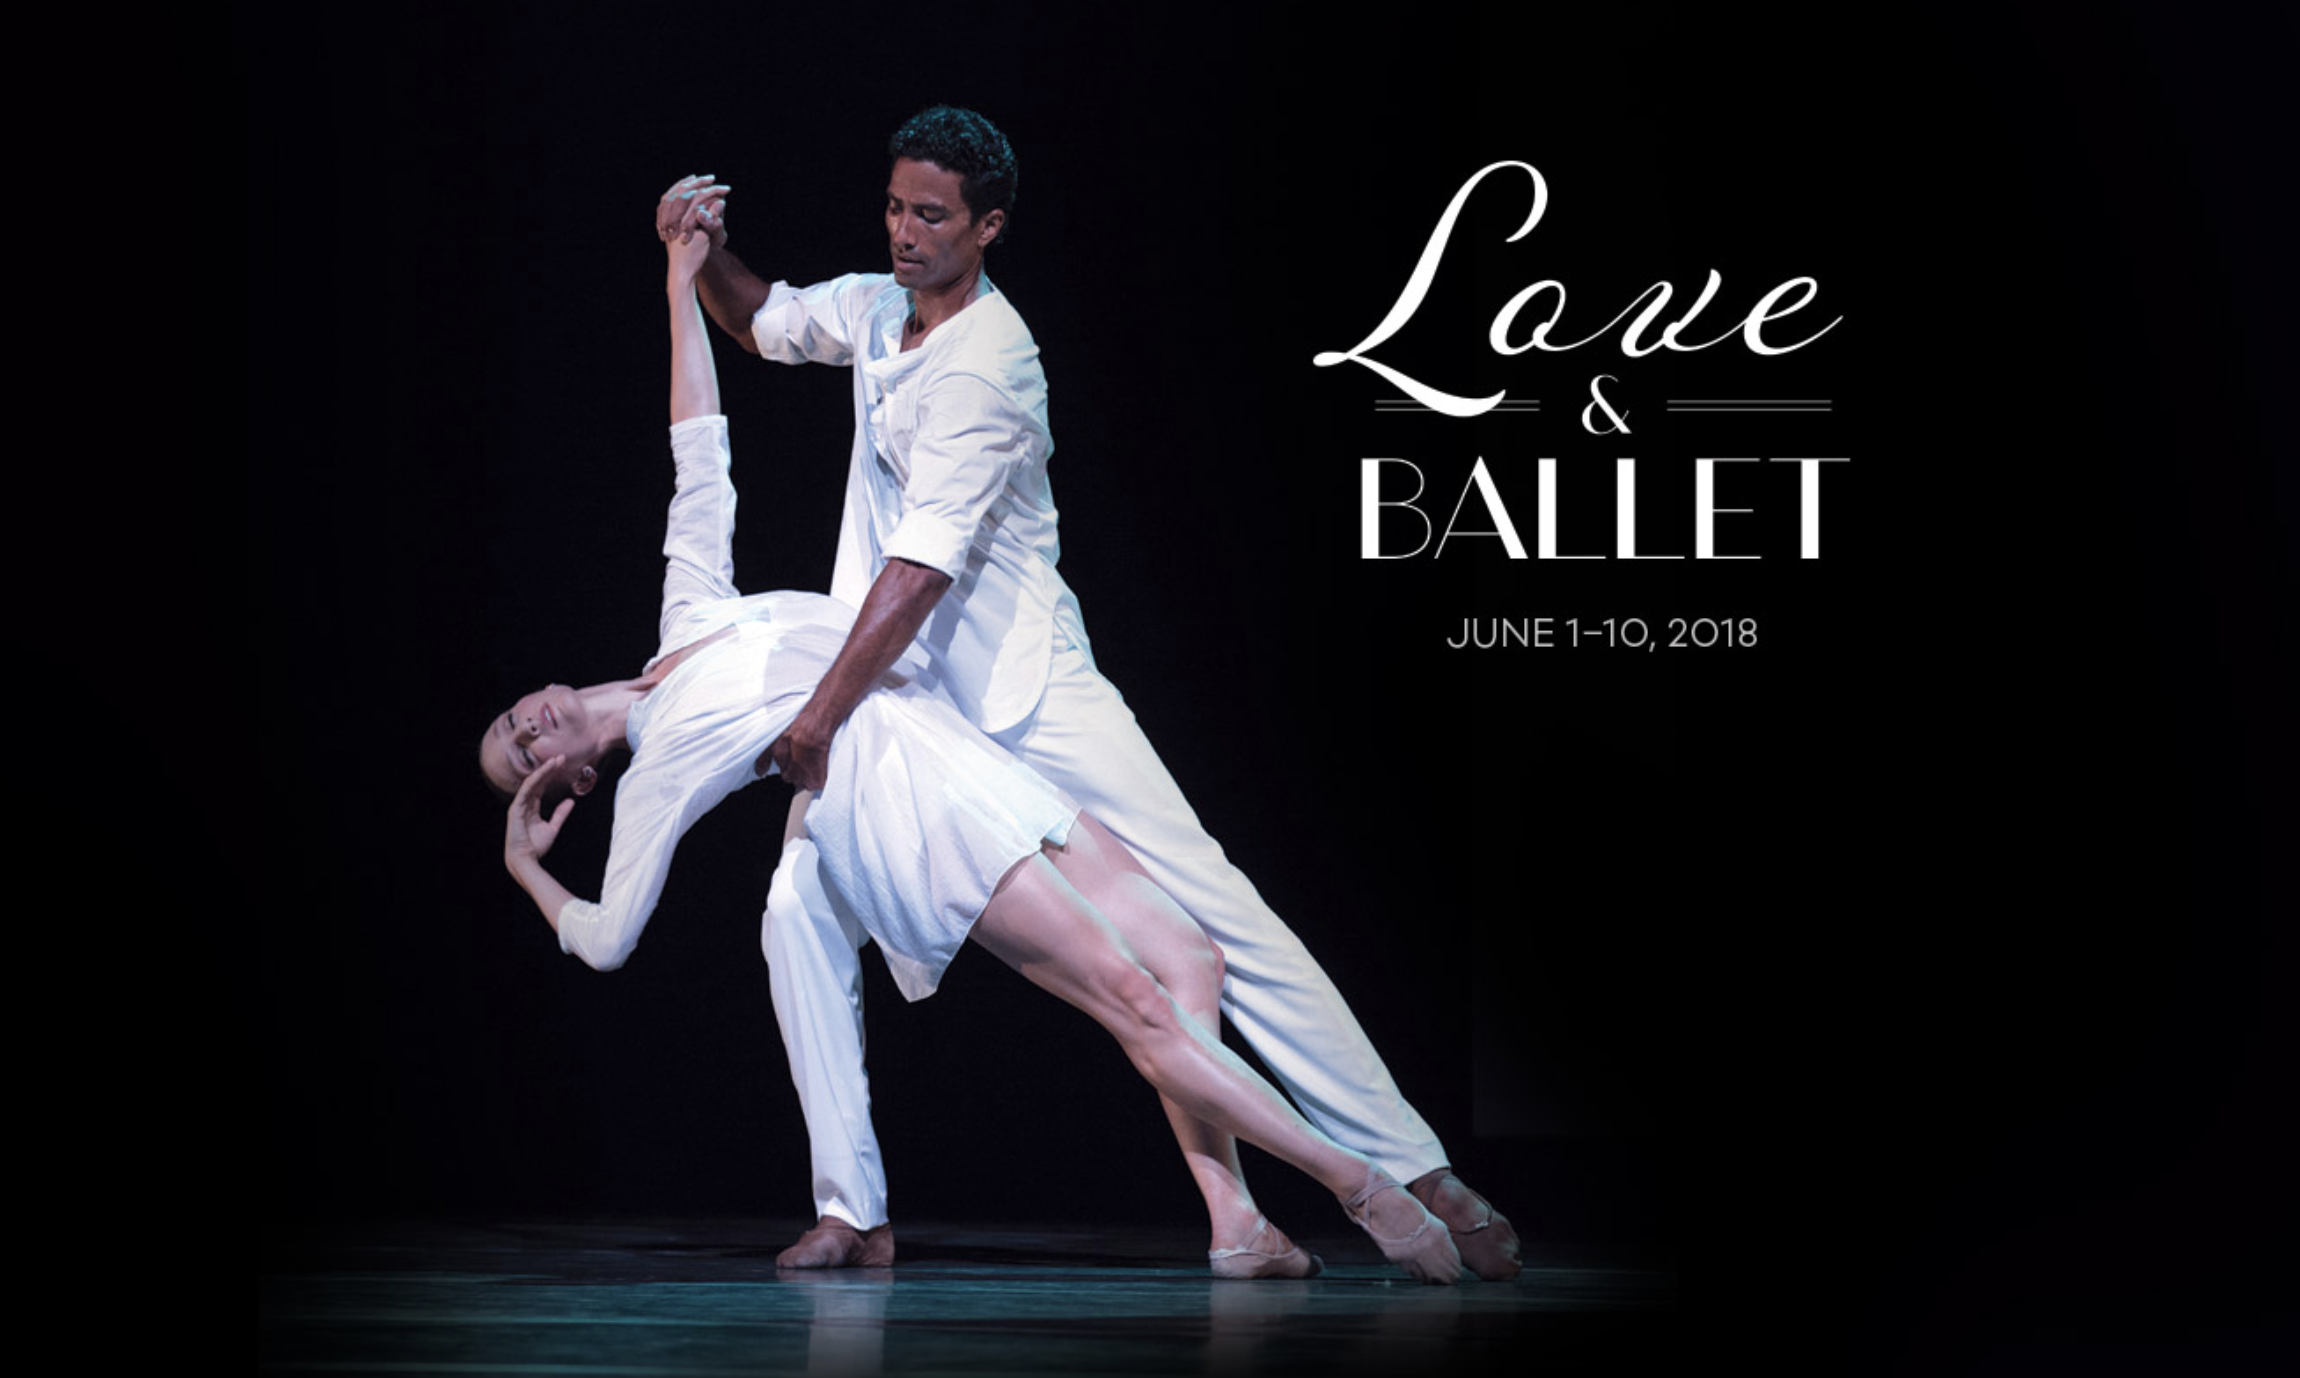 Pacific Northwest Ballet’s Love & Ballet